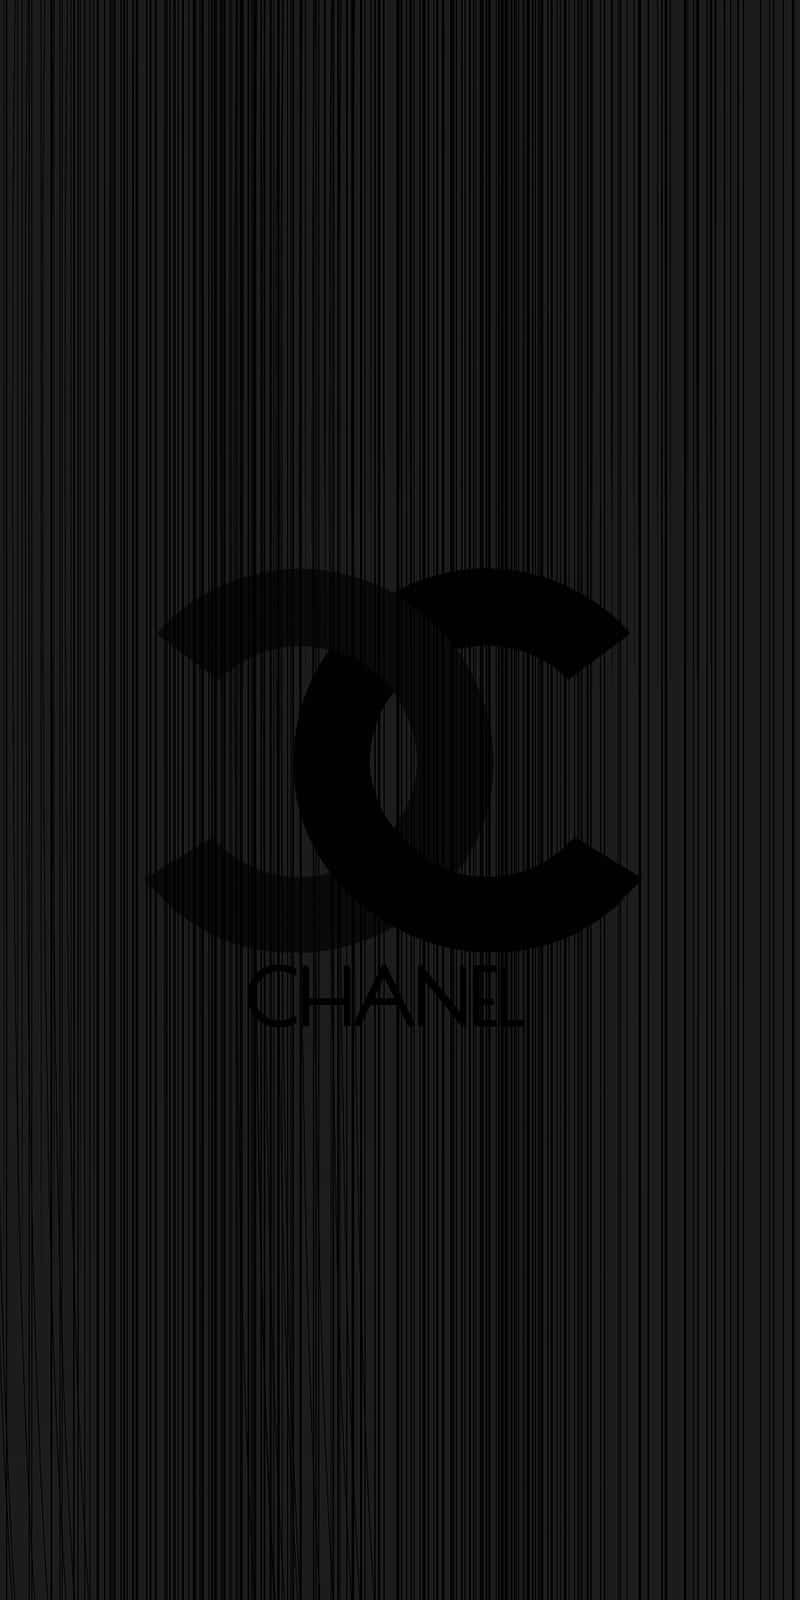 Chanellogobakgrunder, Chanel Logobakgrunder. Wallpaper